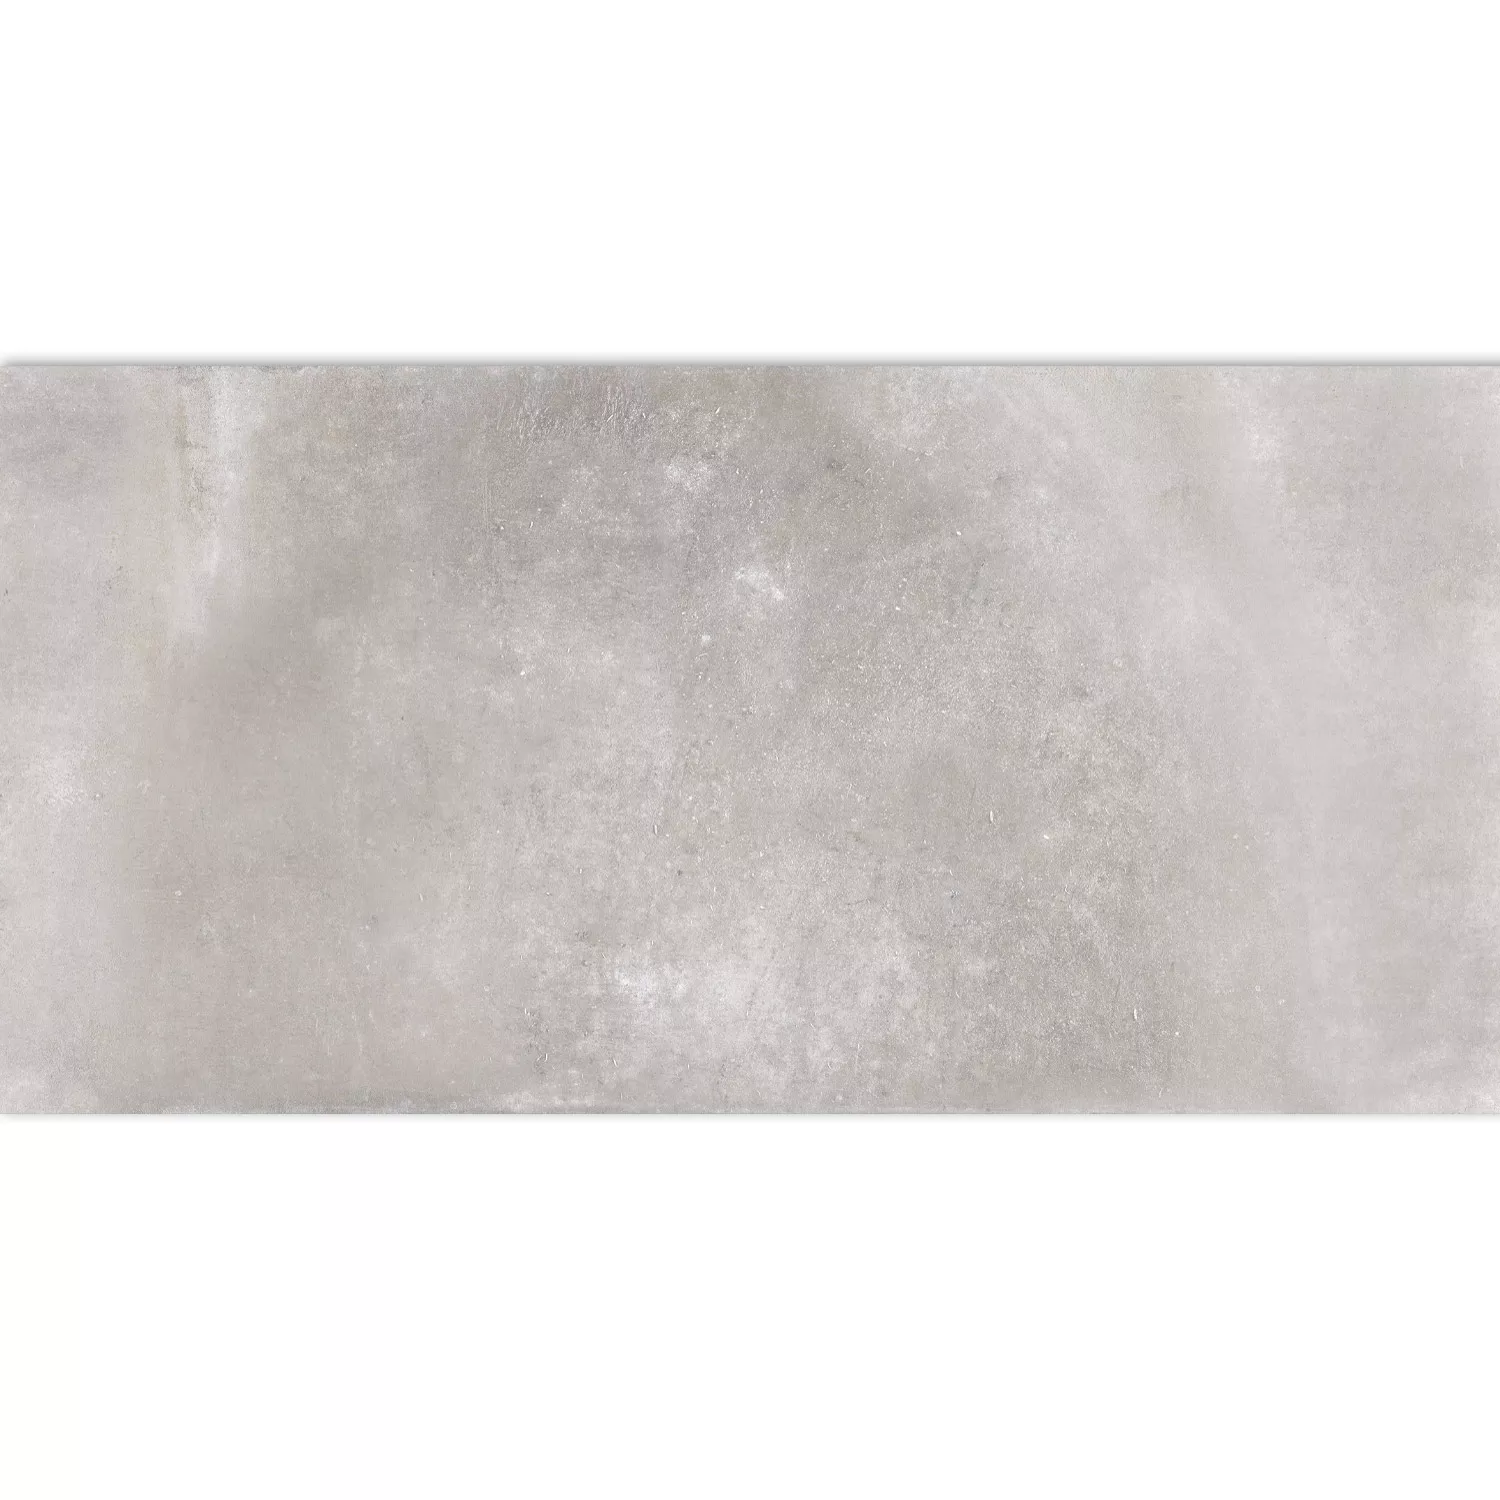 Vloertegels Cement Optic Maryland Grijs 30x60cm